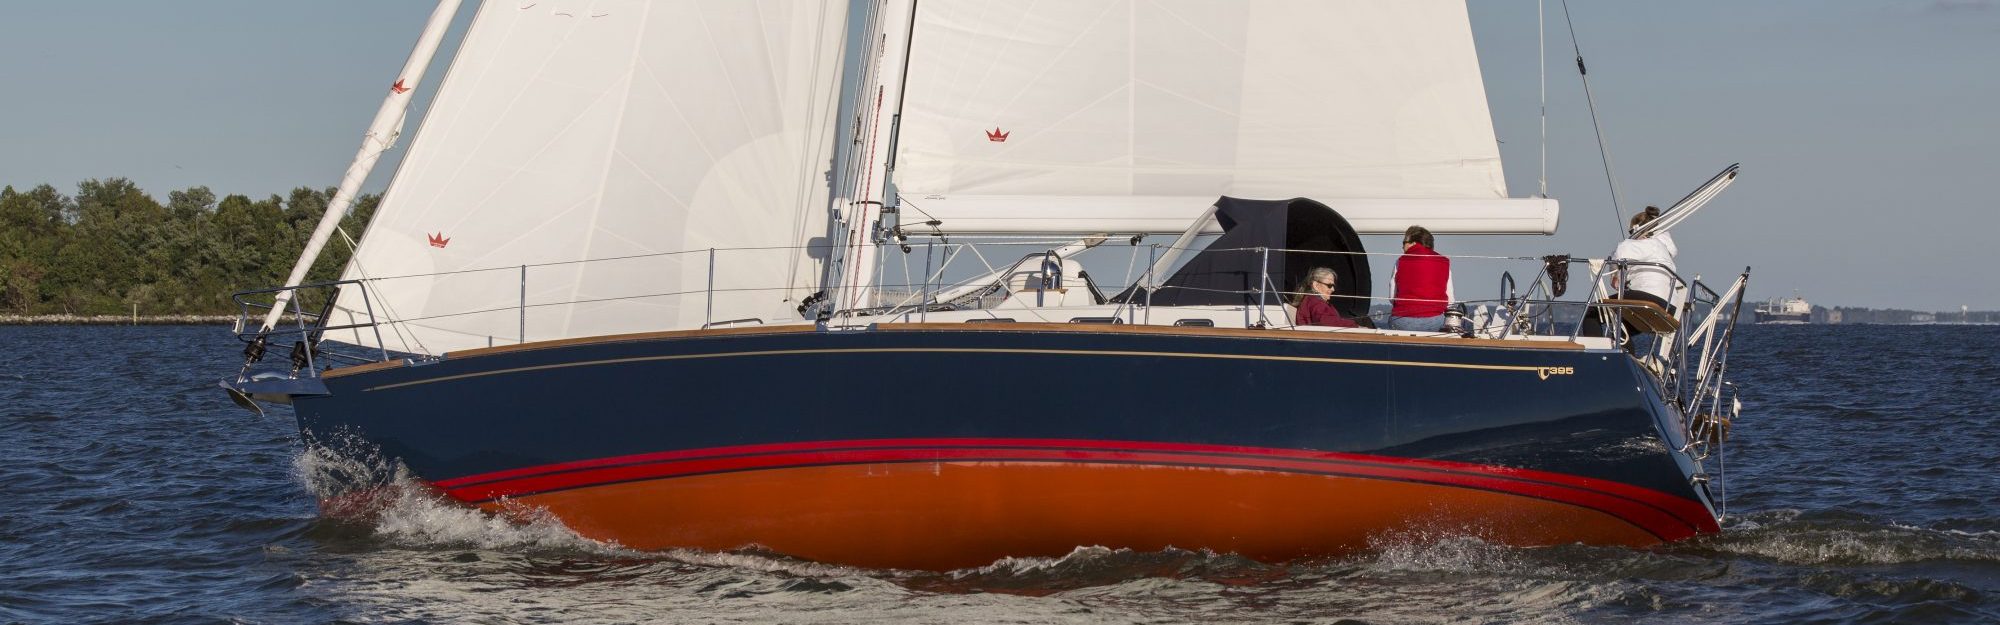 Tartan395 sailing in Annapolis